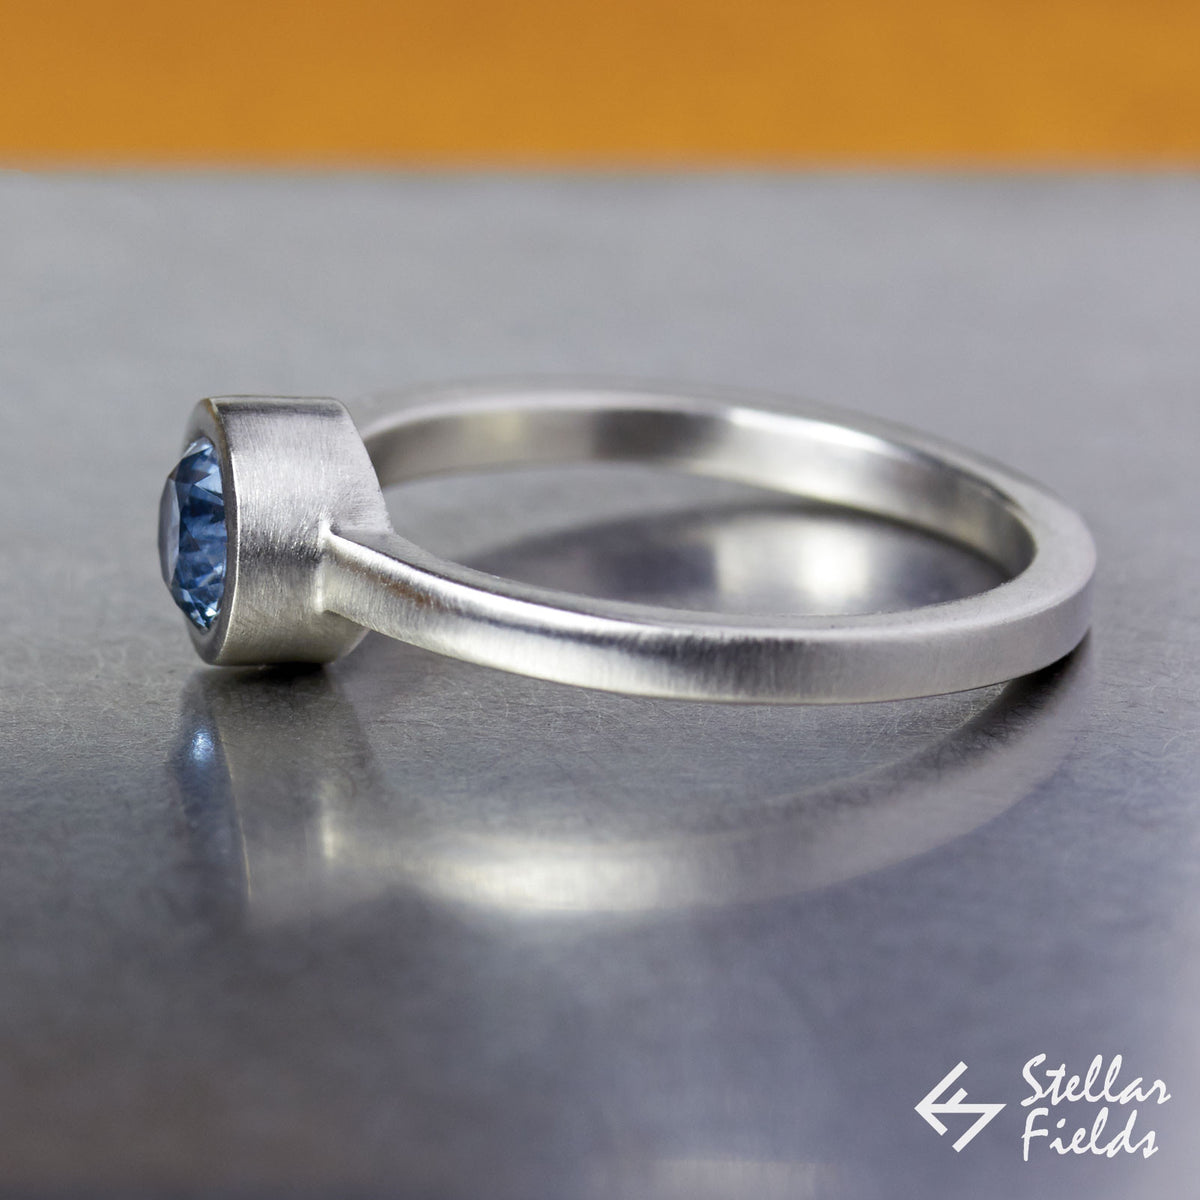 5mm Round Blue Montana Sapphire Modern Round Bezel Set Engagement Ring in Sterling Silver 14k Gold Platinum Stellar Fields Jewelry